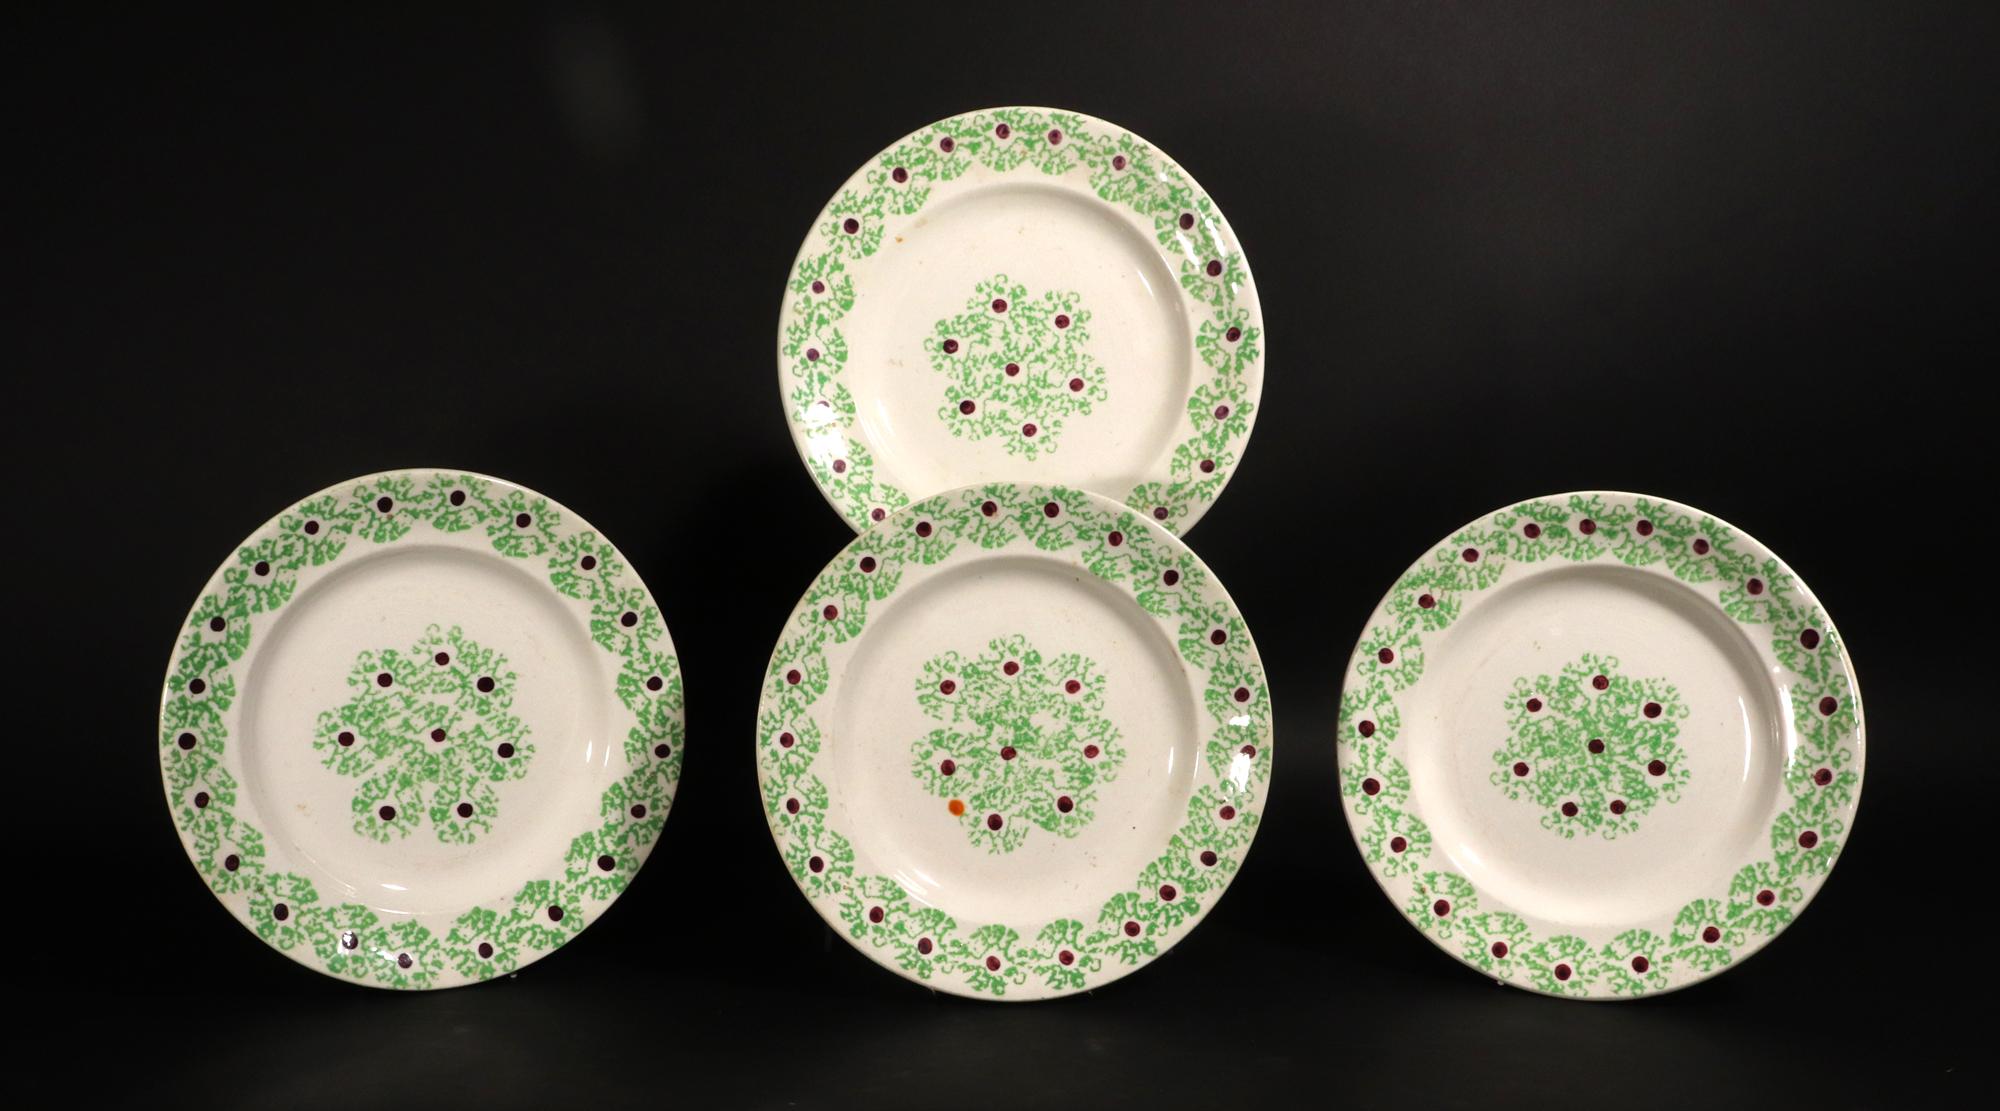 Ensemble de quatre assiettes en poterie anglaise verte épongée,
1ère moitié du 19ème siècle

Les assiettes Sponged Spatterware sont joliment décorées d'une bordure d'algues vertes avec un point marron au centre de chaque timbre.  Le motif se trouve